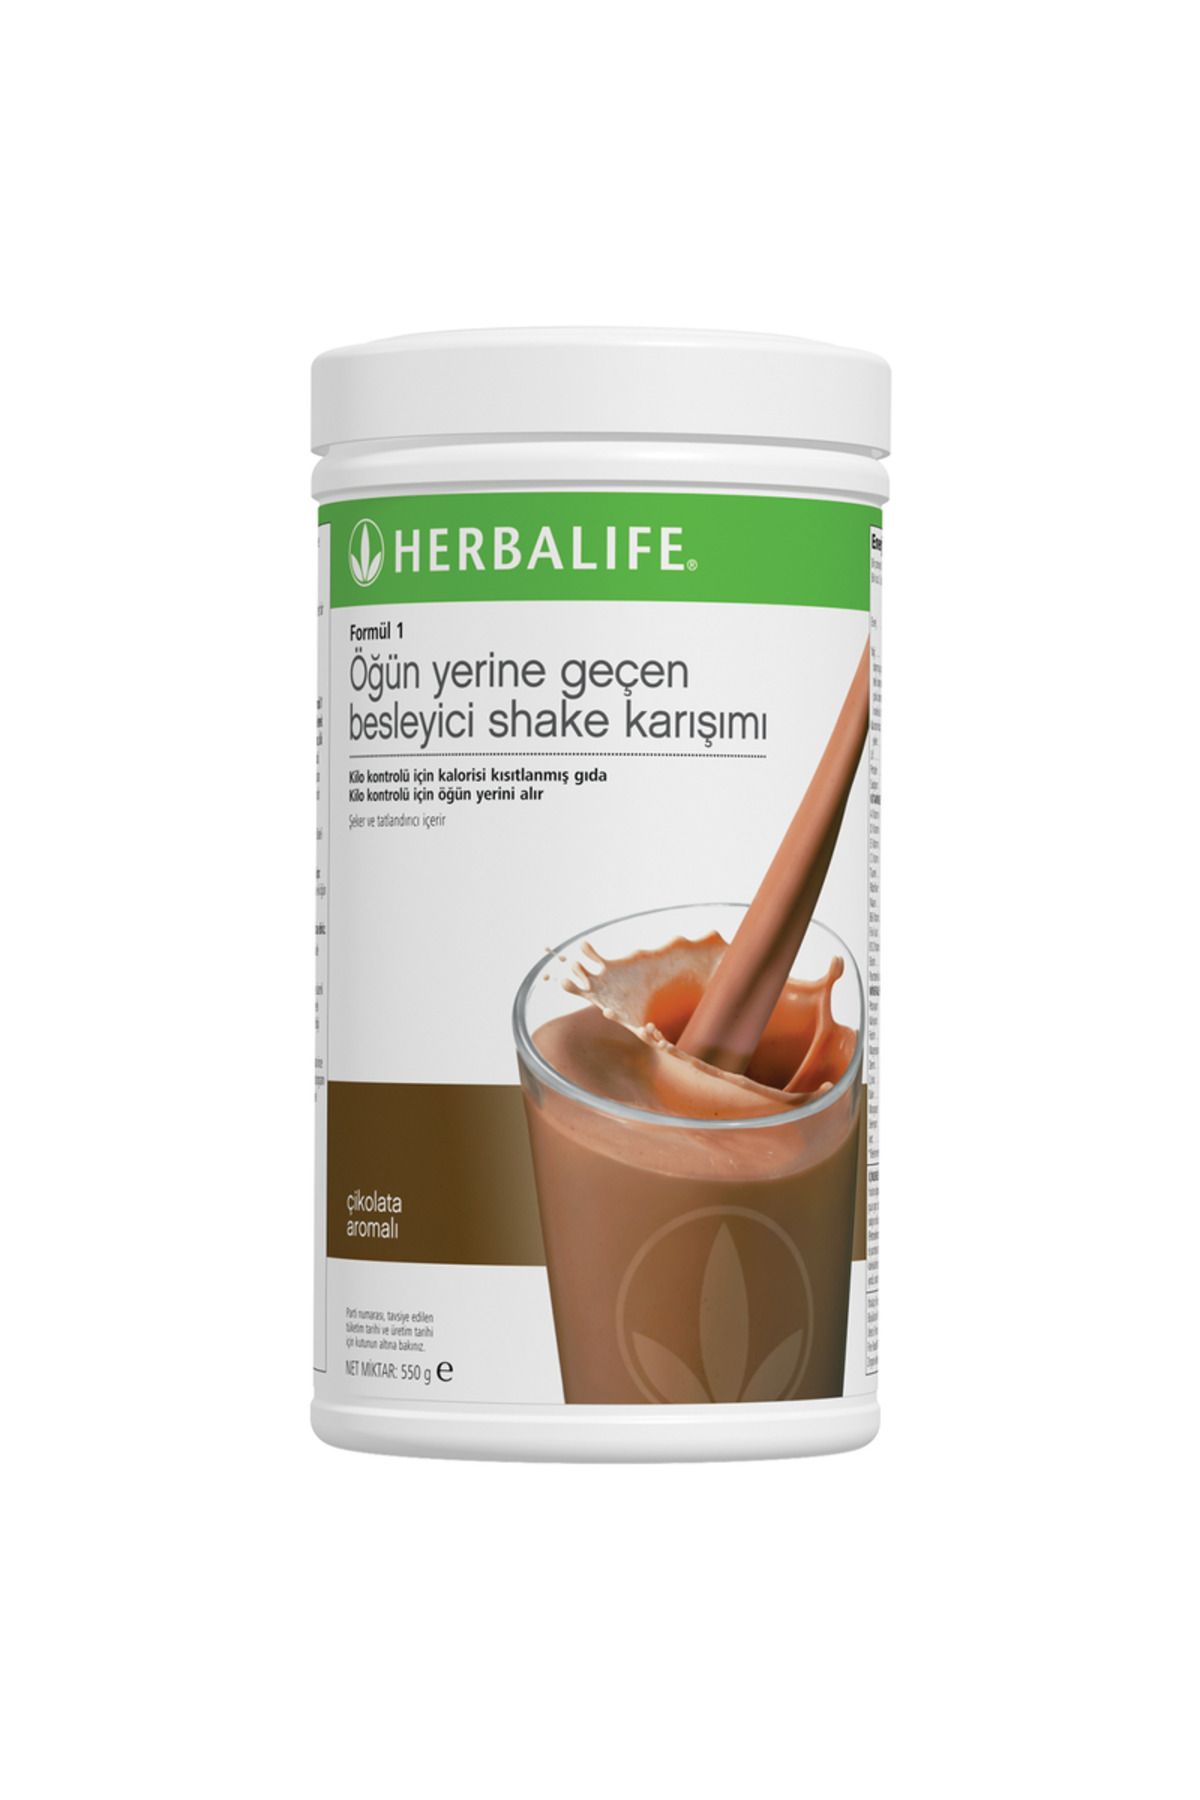 Herbalife Formül 1 Besleyici Shake Karışımı Çikolata Aromalı 550 g